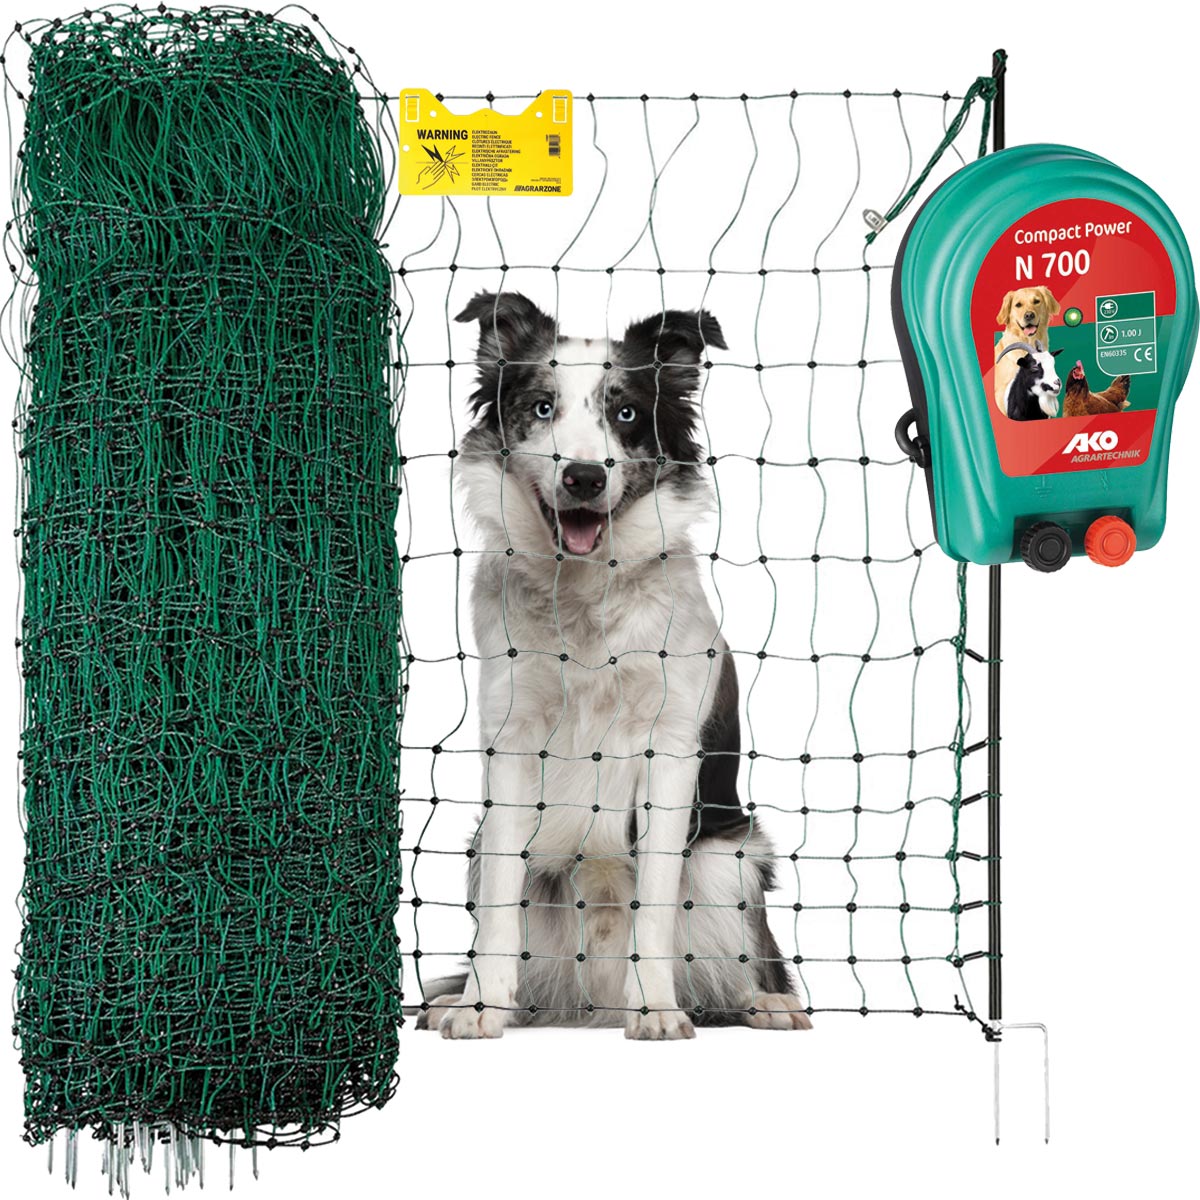 Agrarzone kutyakerítés szett N700 230V, 1J, háló 25m x 106cm, zöld